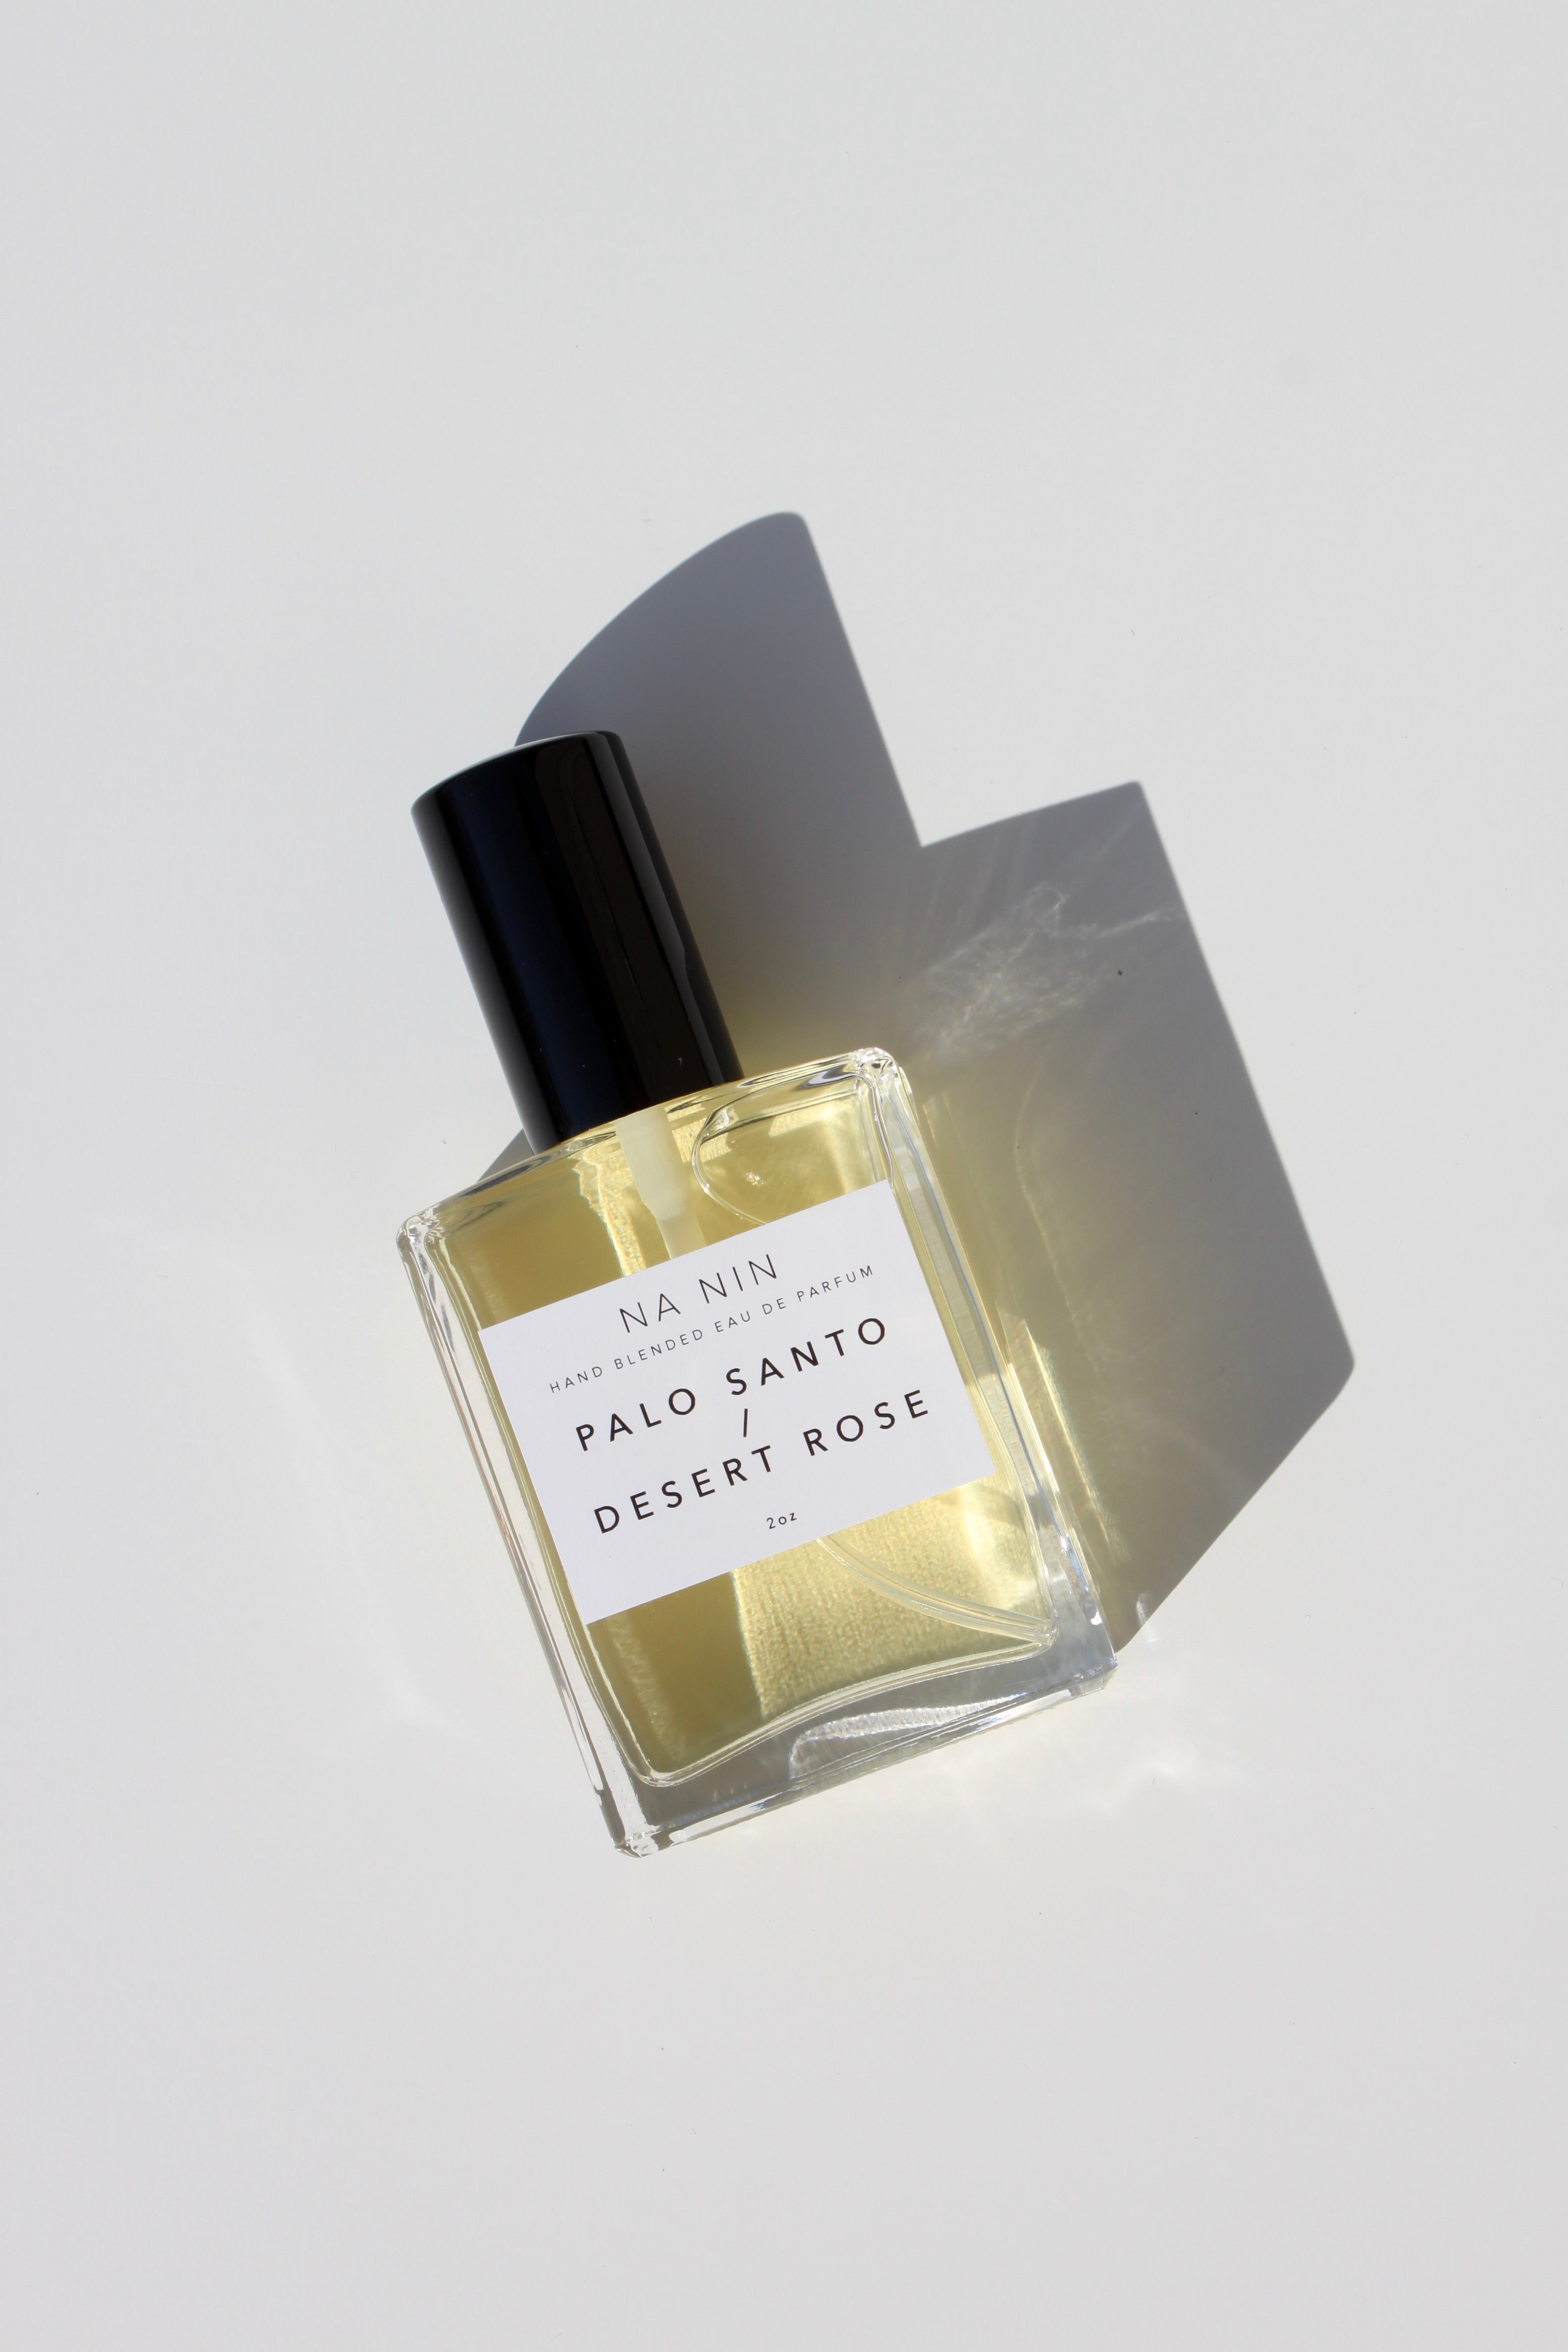 Case of 4 x Palo Santo & Desert Rose Eau de Parfum / 2oz